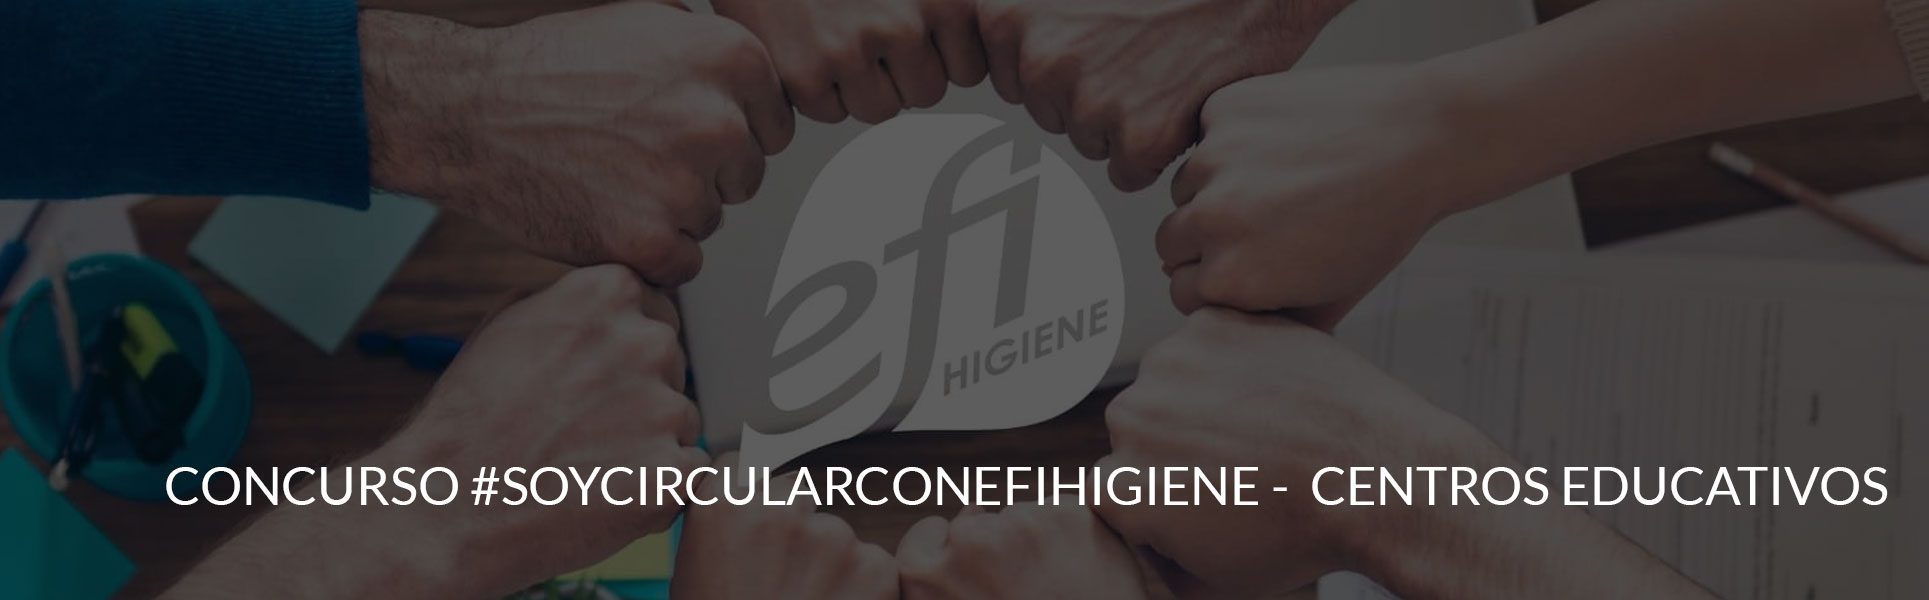 Efi Higiene - Concurso colegios - CABECERA CONCUROSO CENTROS